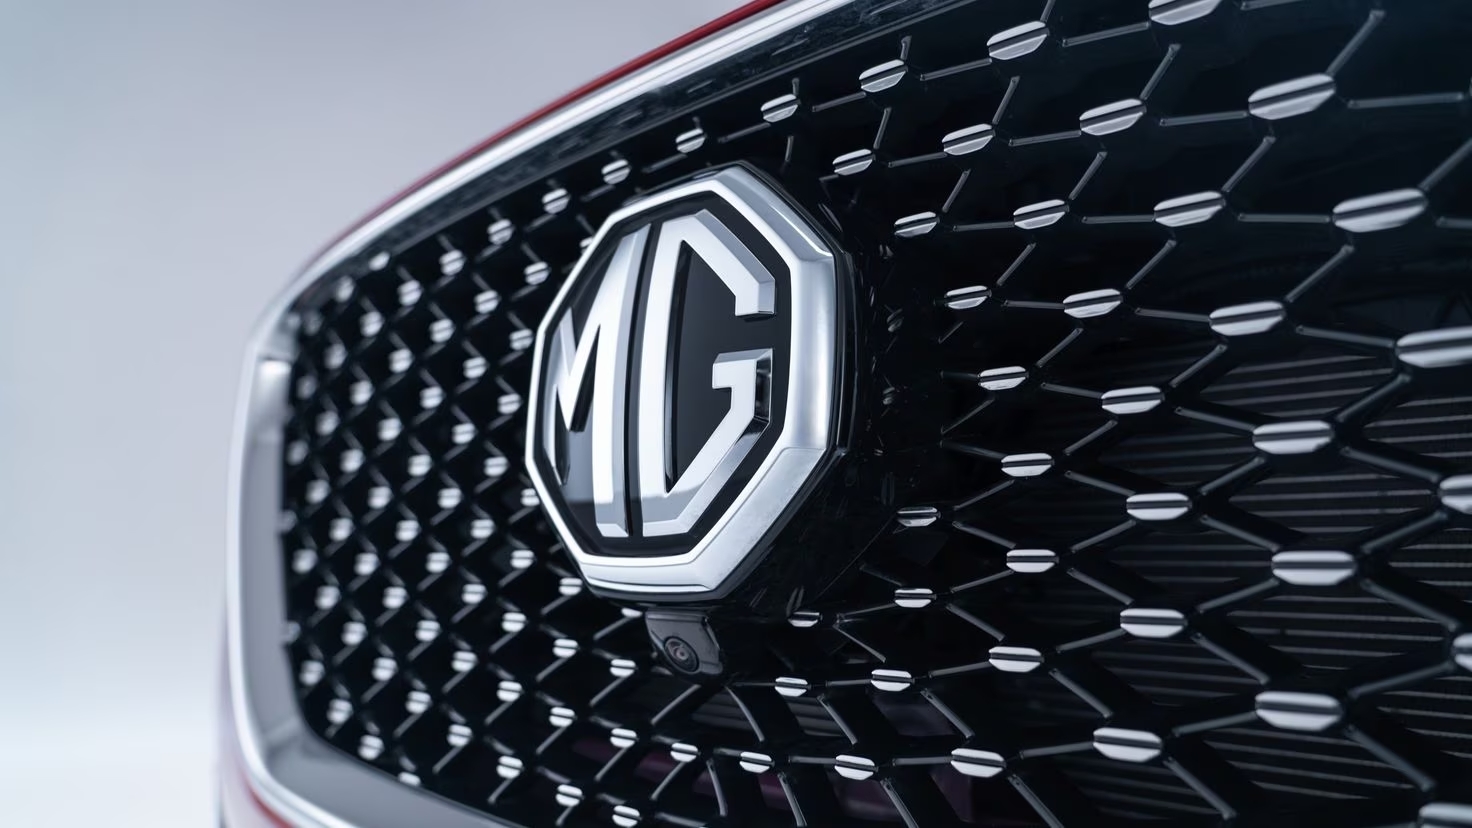 Foto de MG Motor: Forjando el Futuro con Innovación